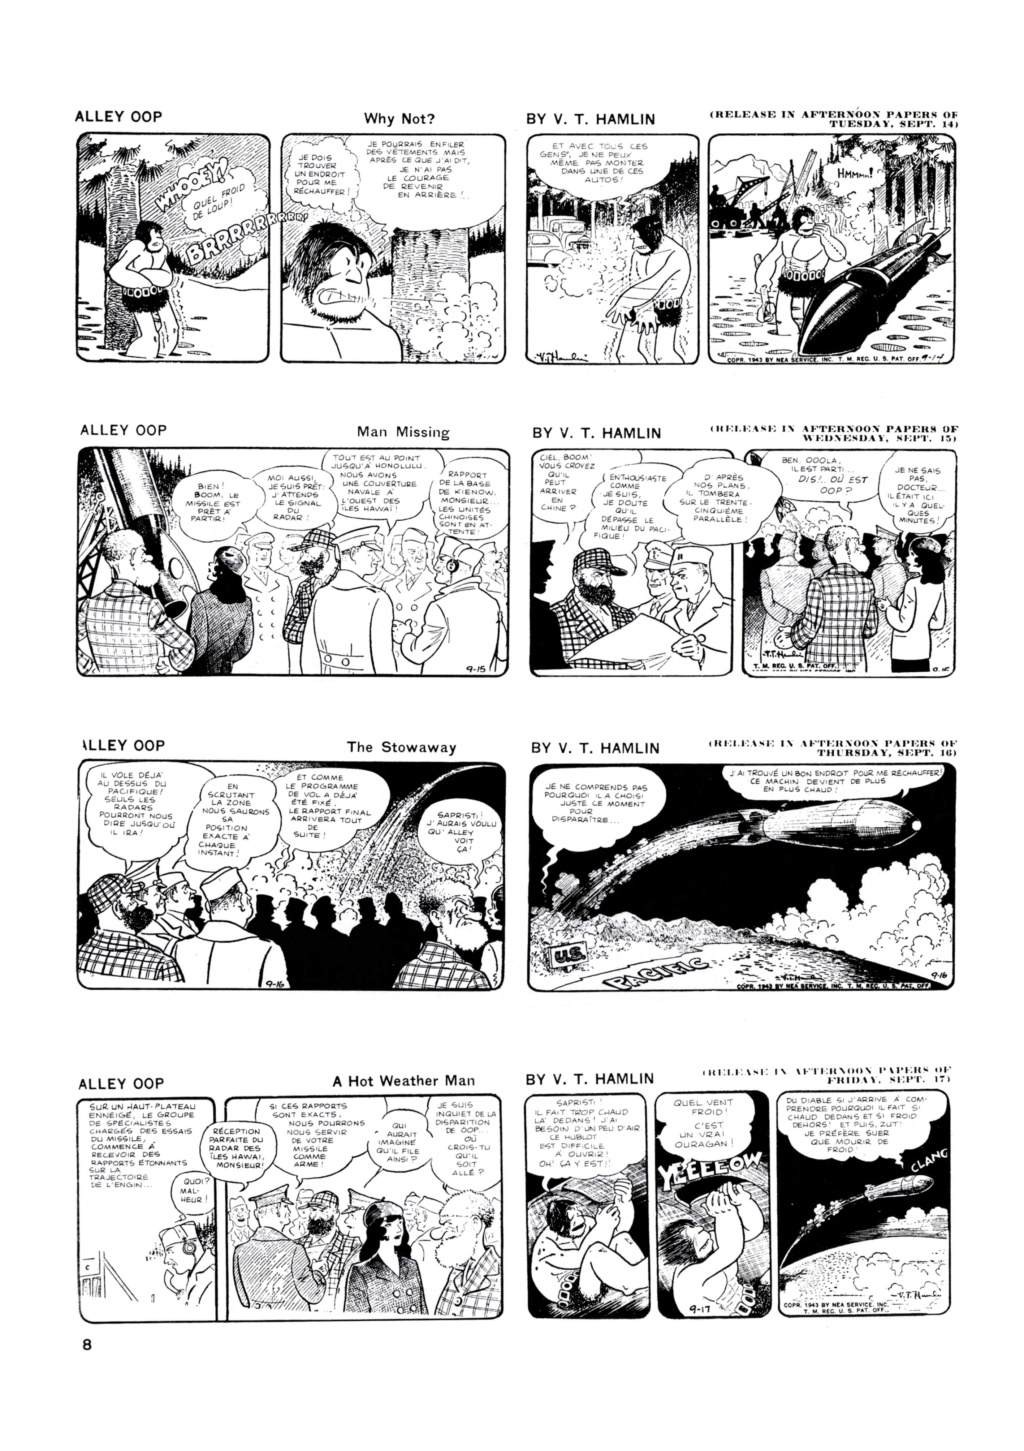 9ème Art, musée de la bande dessinée par Morris et Vankeer - Page 5 0824